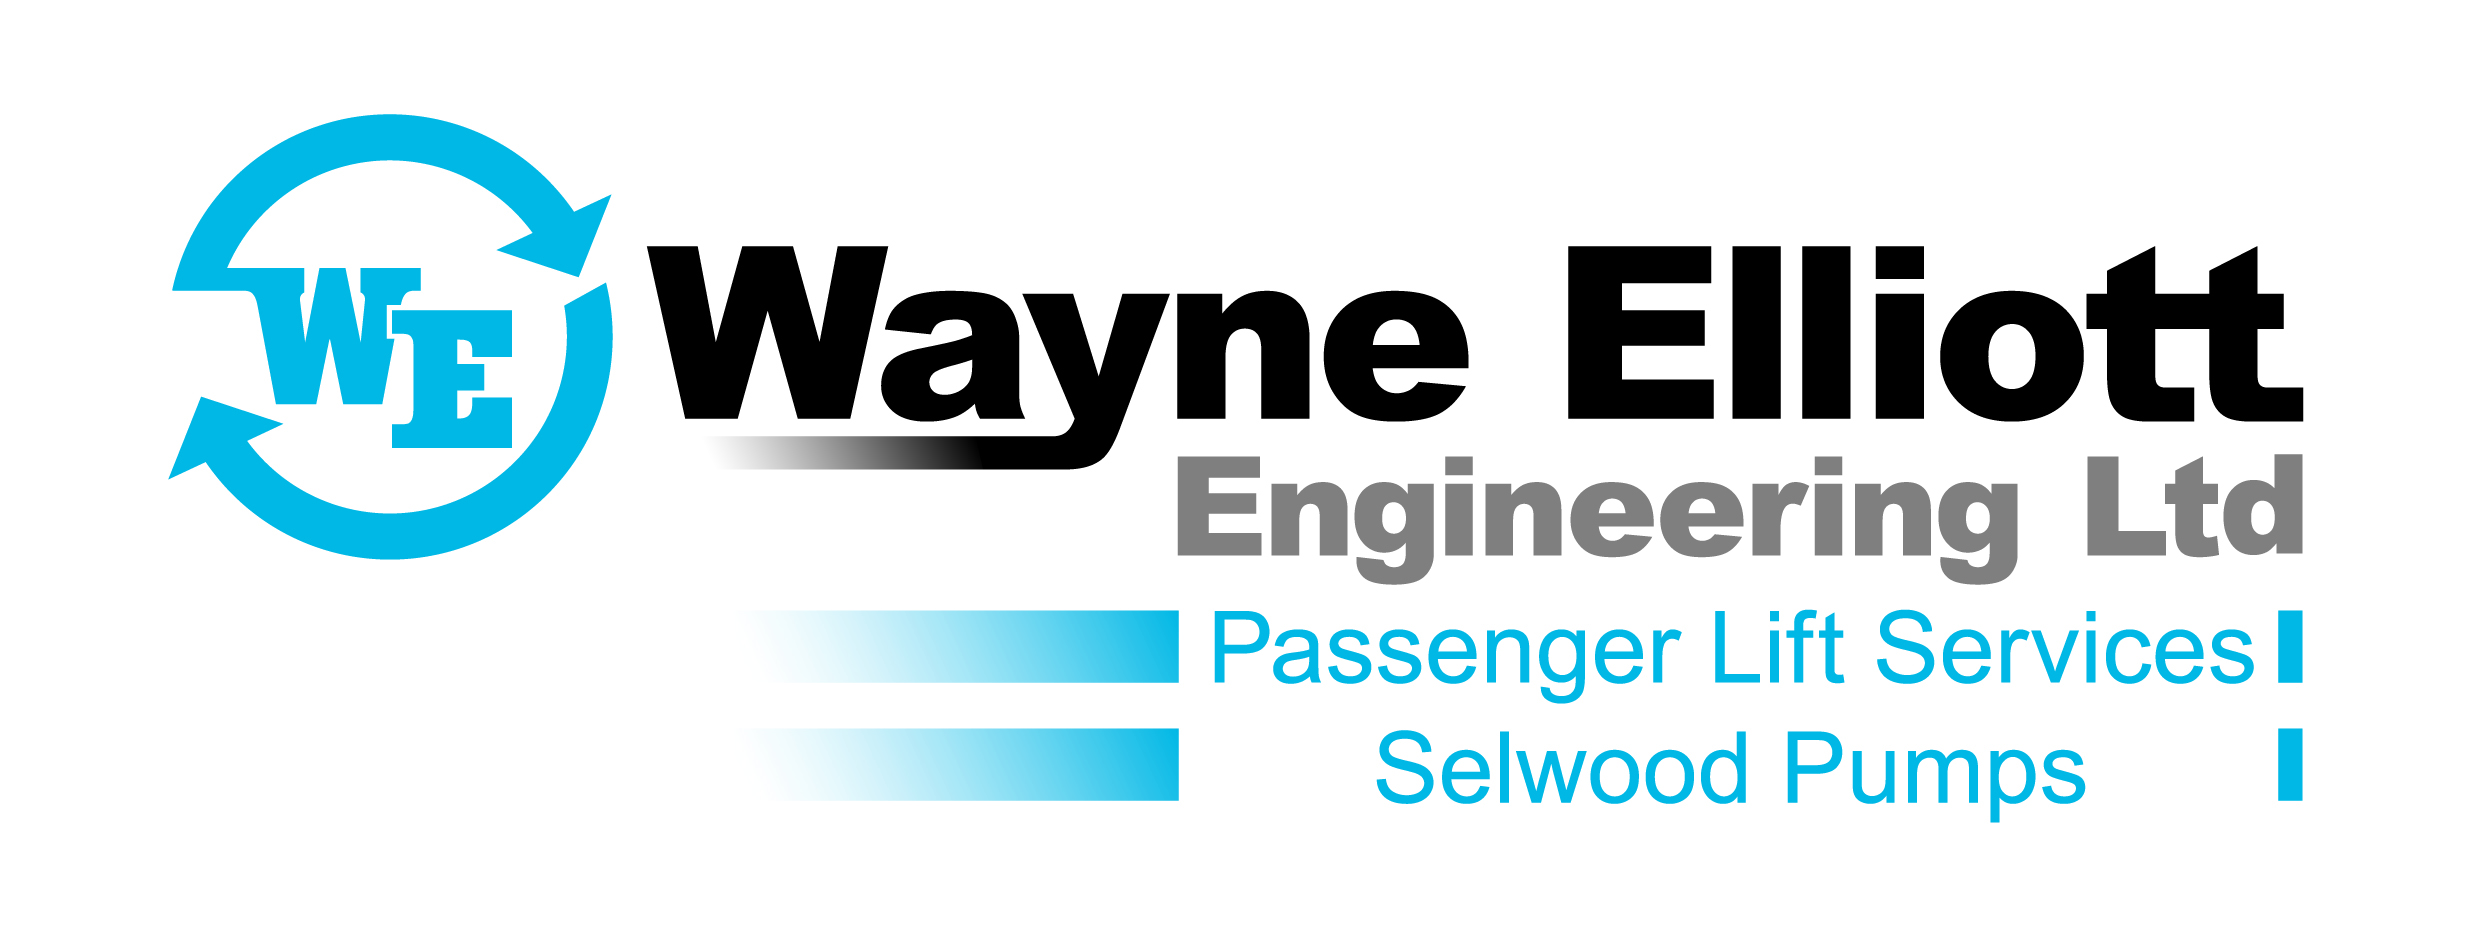 WAYNE ELLIOTT ENGINEERING LTD